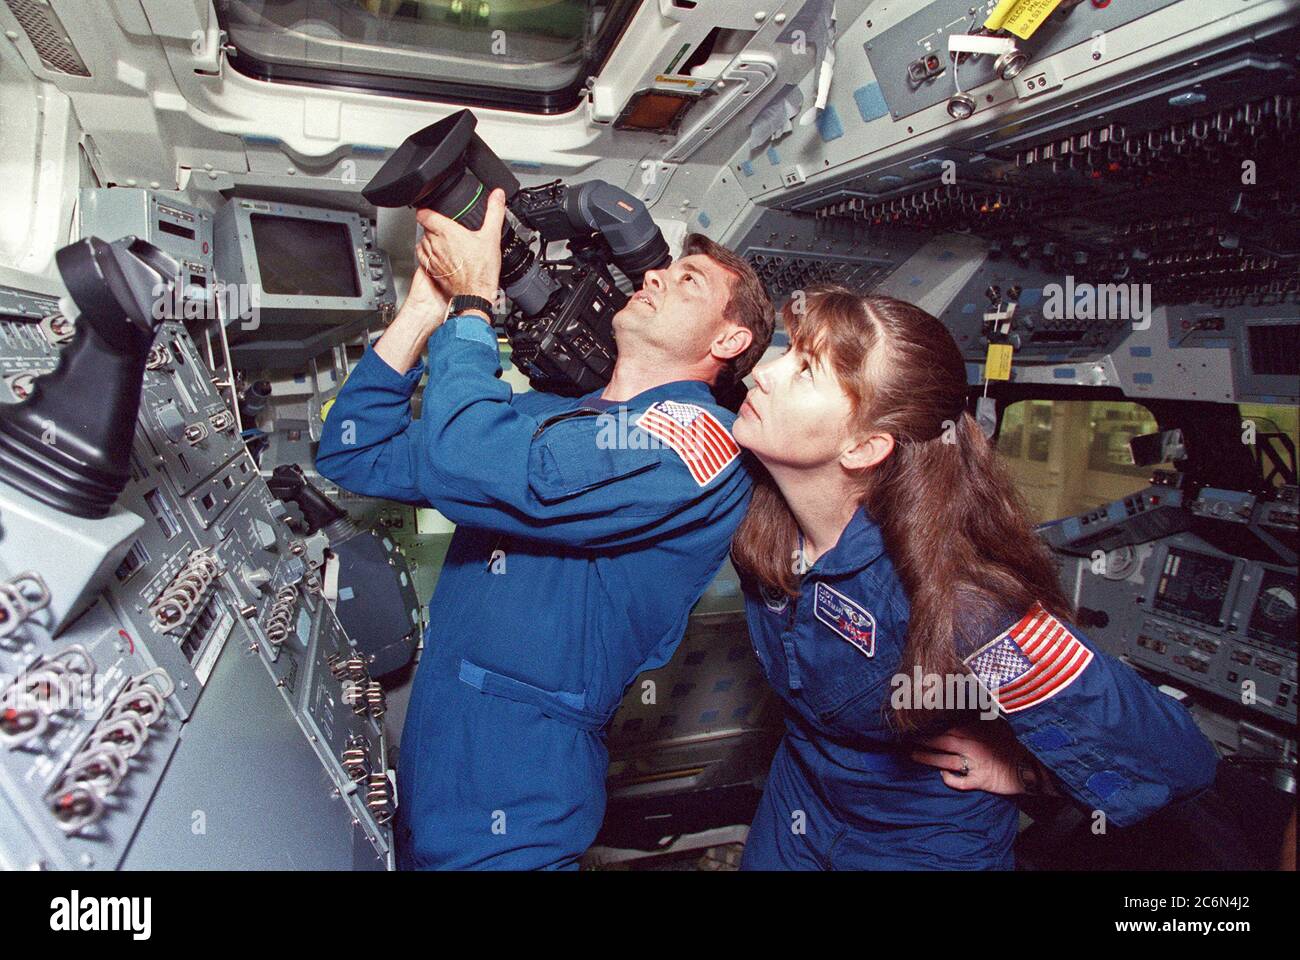 (April 1999) --- in Vorbereitung auf ein STS-93-Testobjektiv (DTO) trainieren die Astronauten Jeffrey S. Ashby, Pilot, und Catherine G. (Cady) Coleman, Missionsspezialist, mit einem hochauflösenden Fernsehcamcorder. Die Kamera wird für ihre geplante Juli-Mission an Bord des Space Shuttle Columbia transportiert. Stockfoto